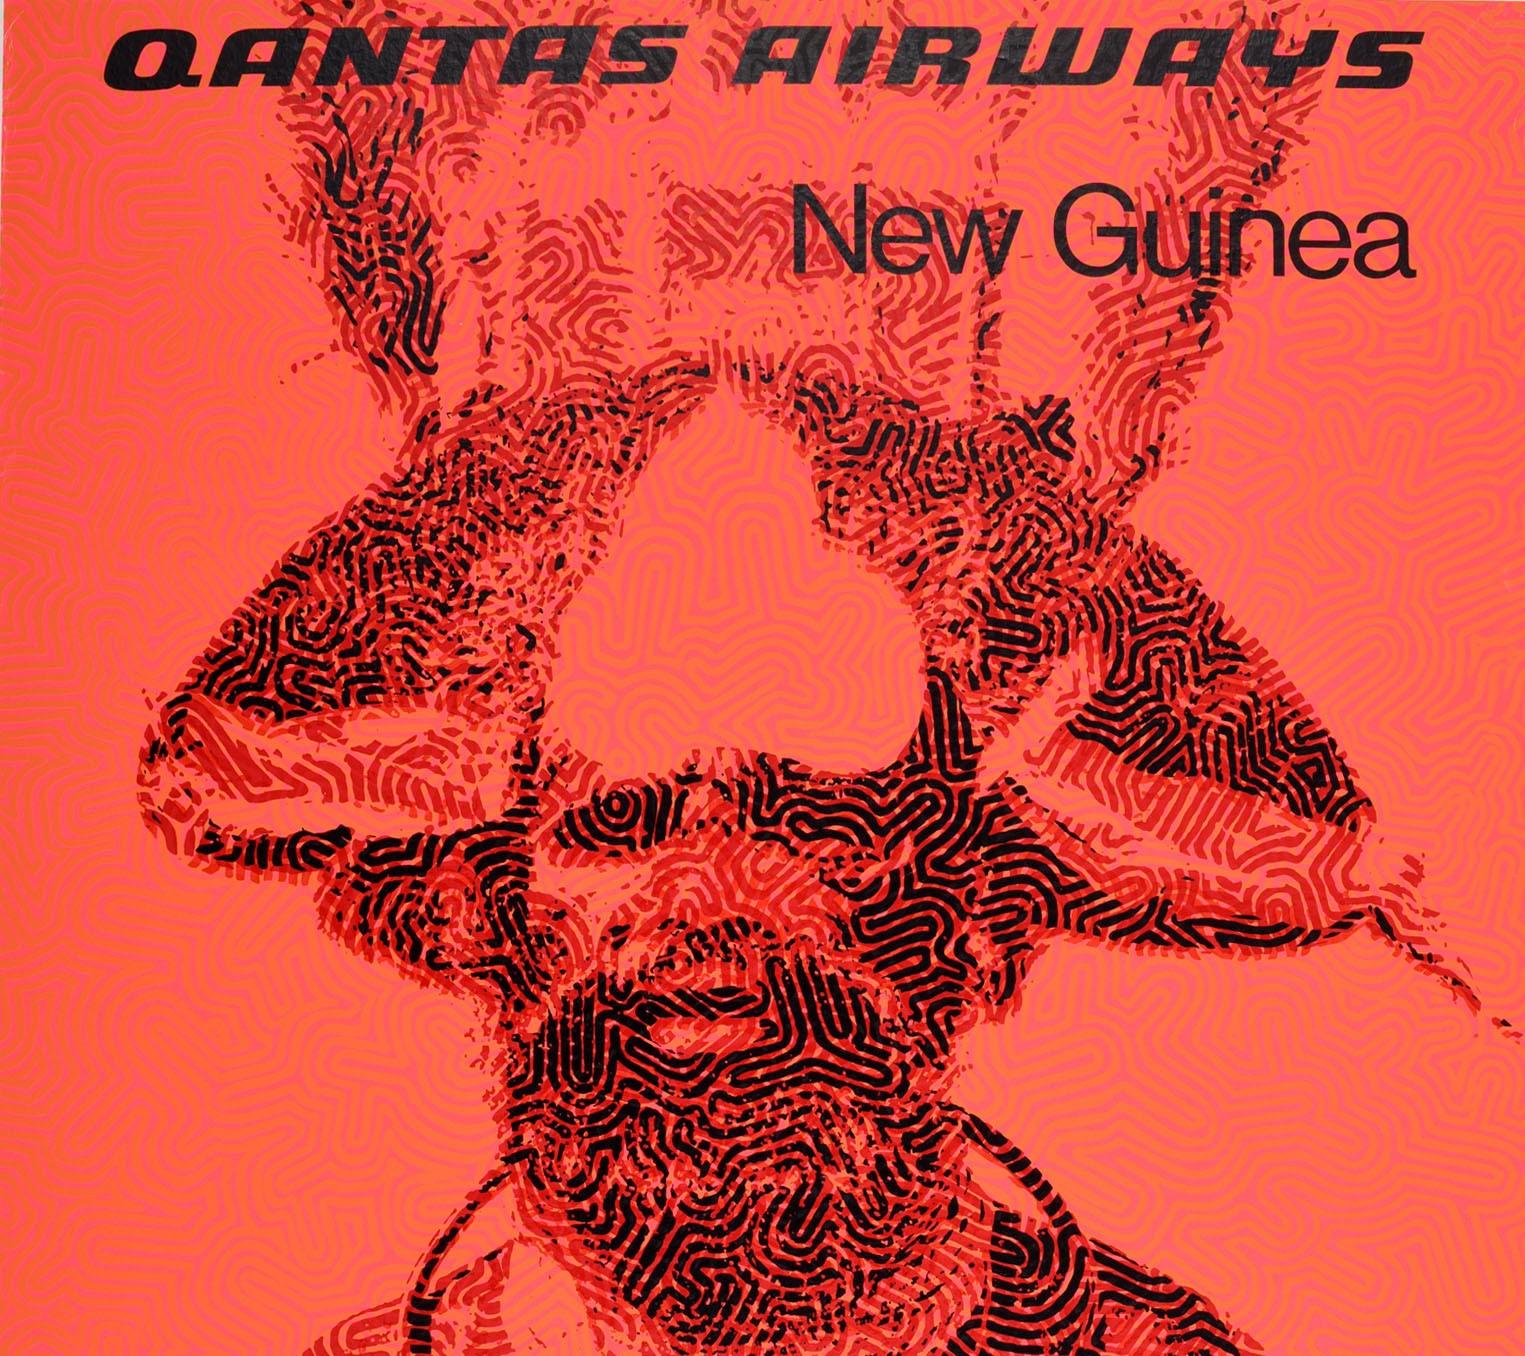 Original-Reiseplakat für Neuguinea, herausgegeben von Qantas Airways, mit einem traditionellen Bild eines Mannes vor einem rosa schattierten Hintergrund. Die Insel Neuguinea gehört zu Melanesien und liegt im Pazifischen Ozean nördlich von